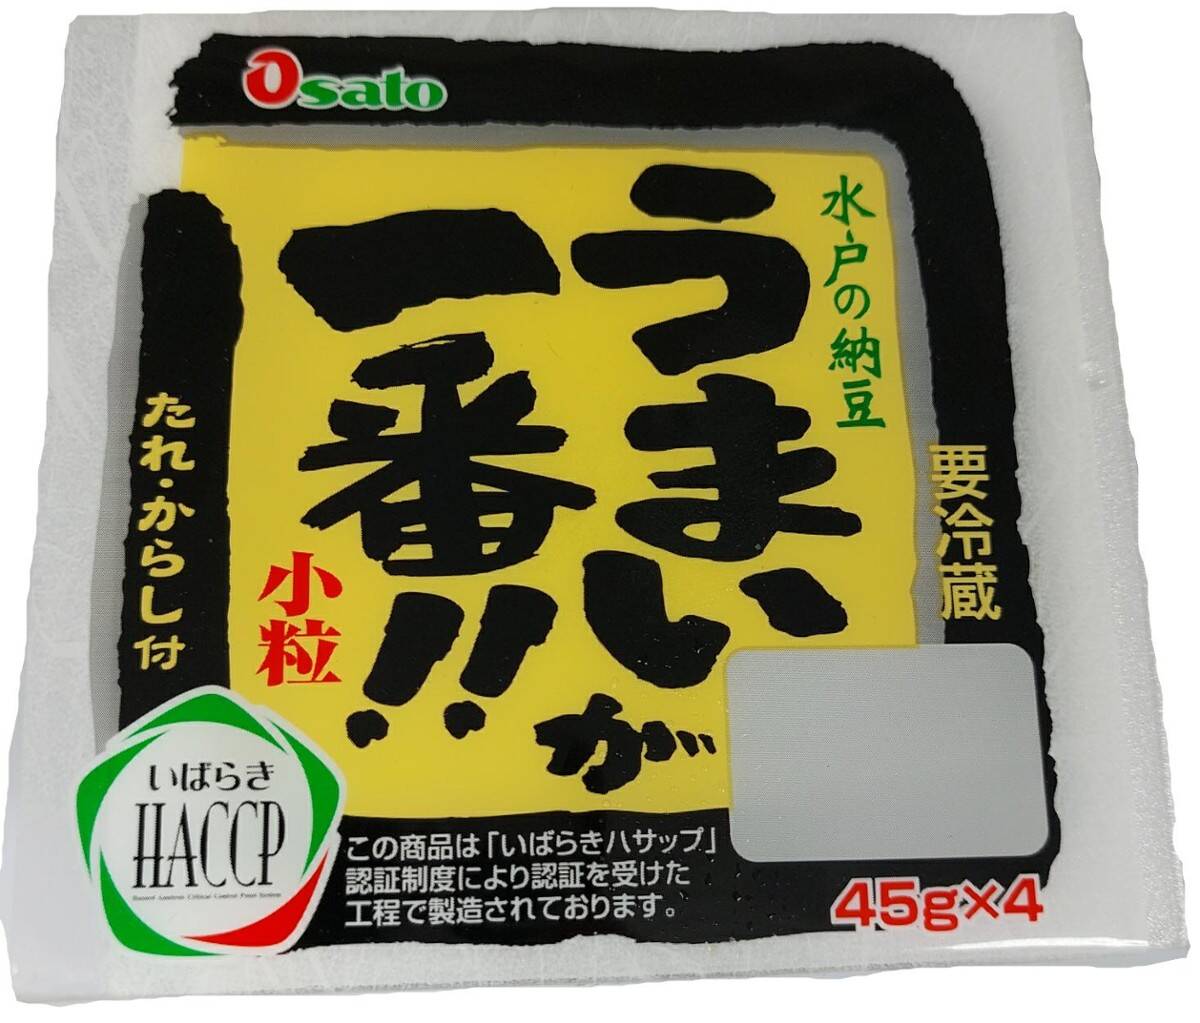 Natto paczka z sosem (45g x4)